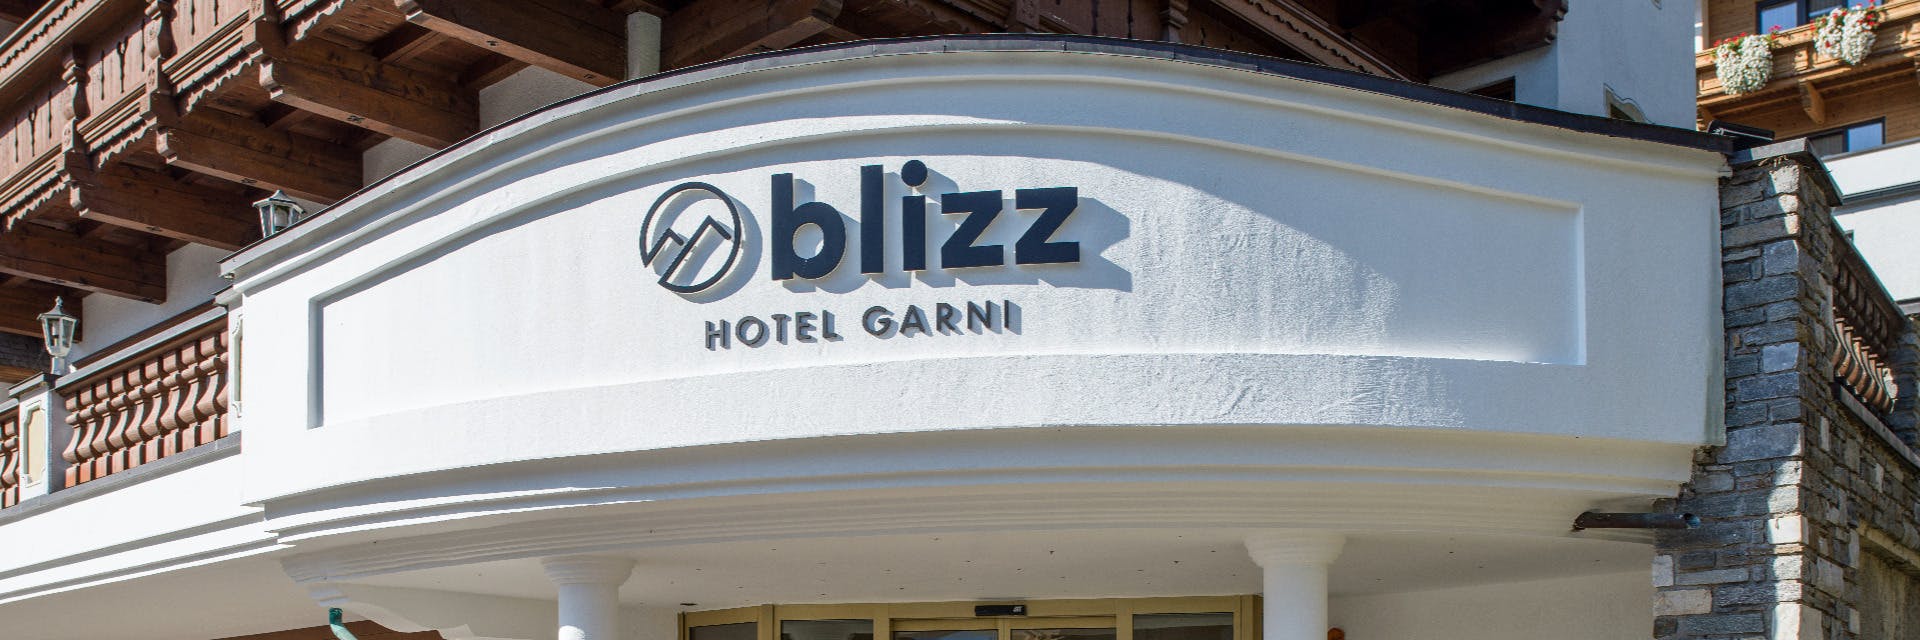 Hotel BLIZZ